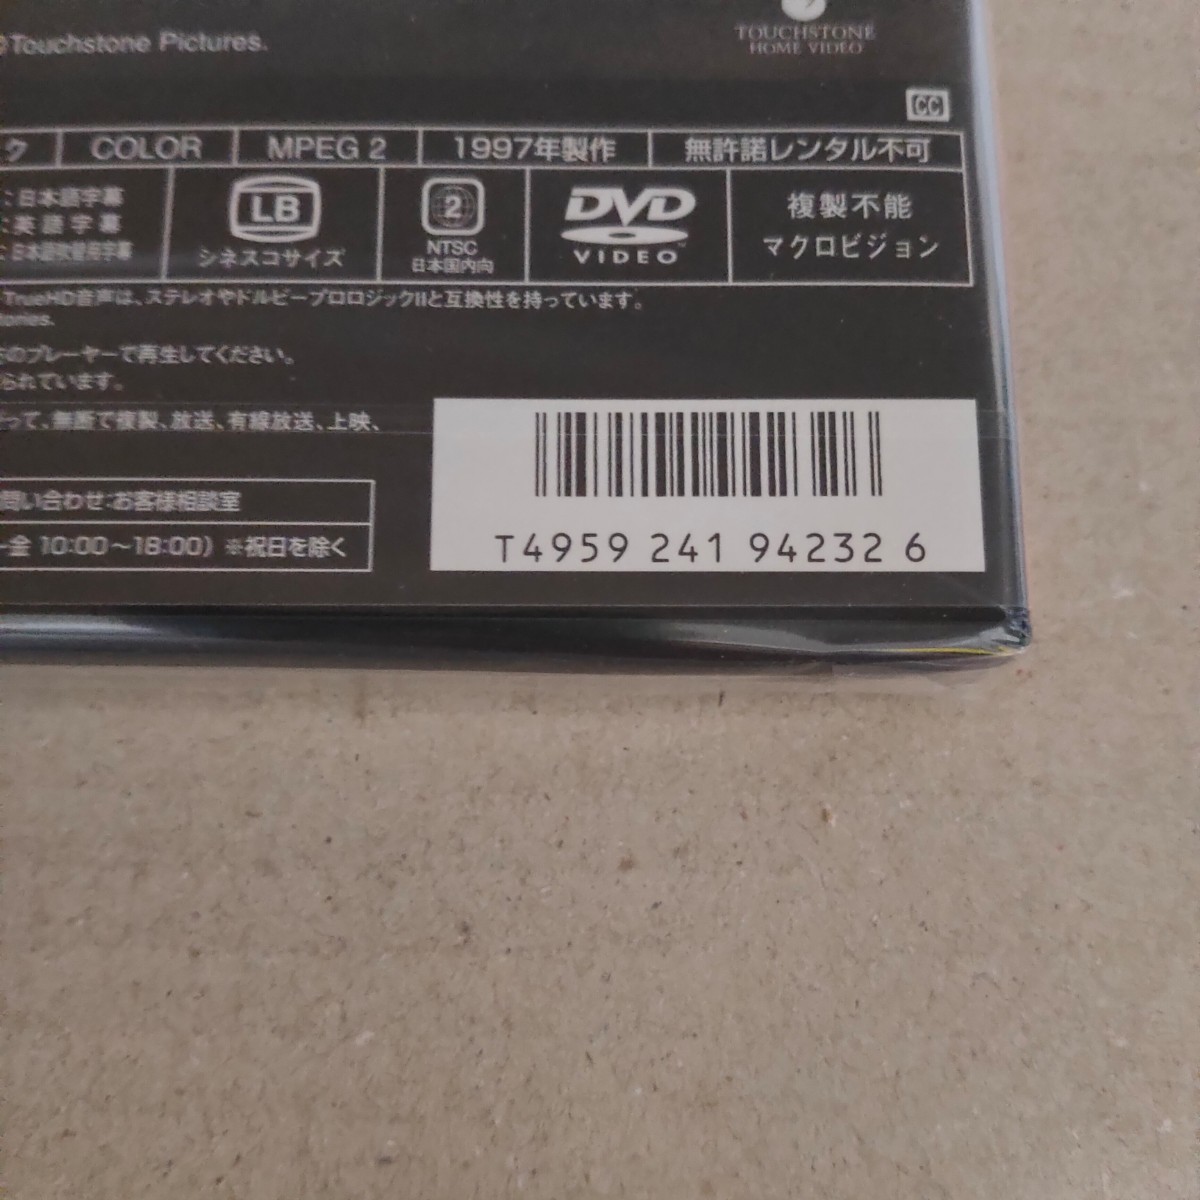 コン・エアー  特別版  DVD  ニコラス・ケイジ  セル版 新品 未開封 送料無料 匿名配送